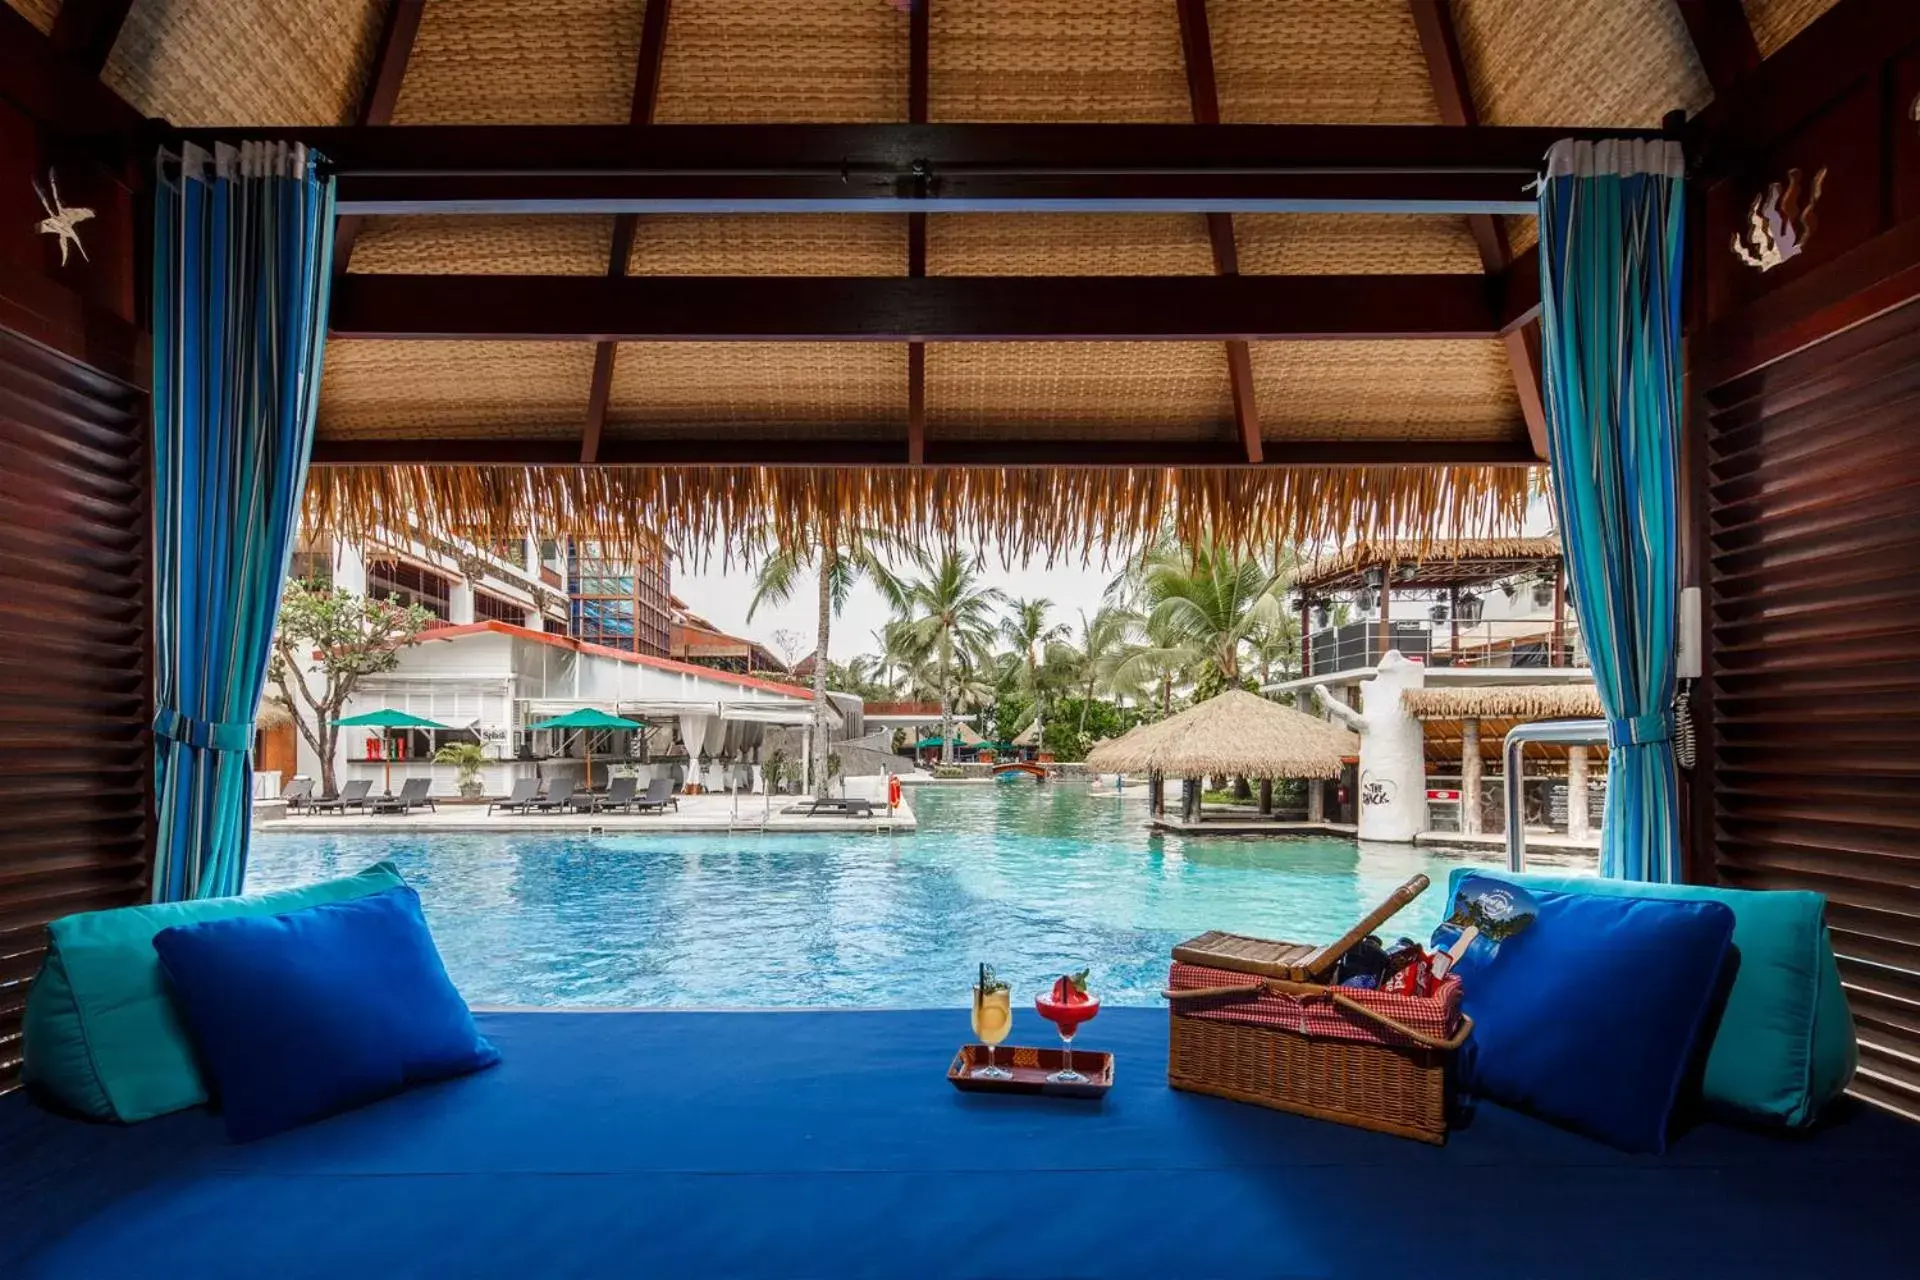 Pool view in Hard Rock Hotel Bali